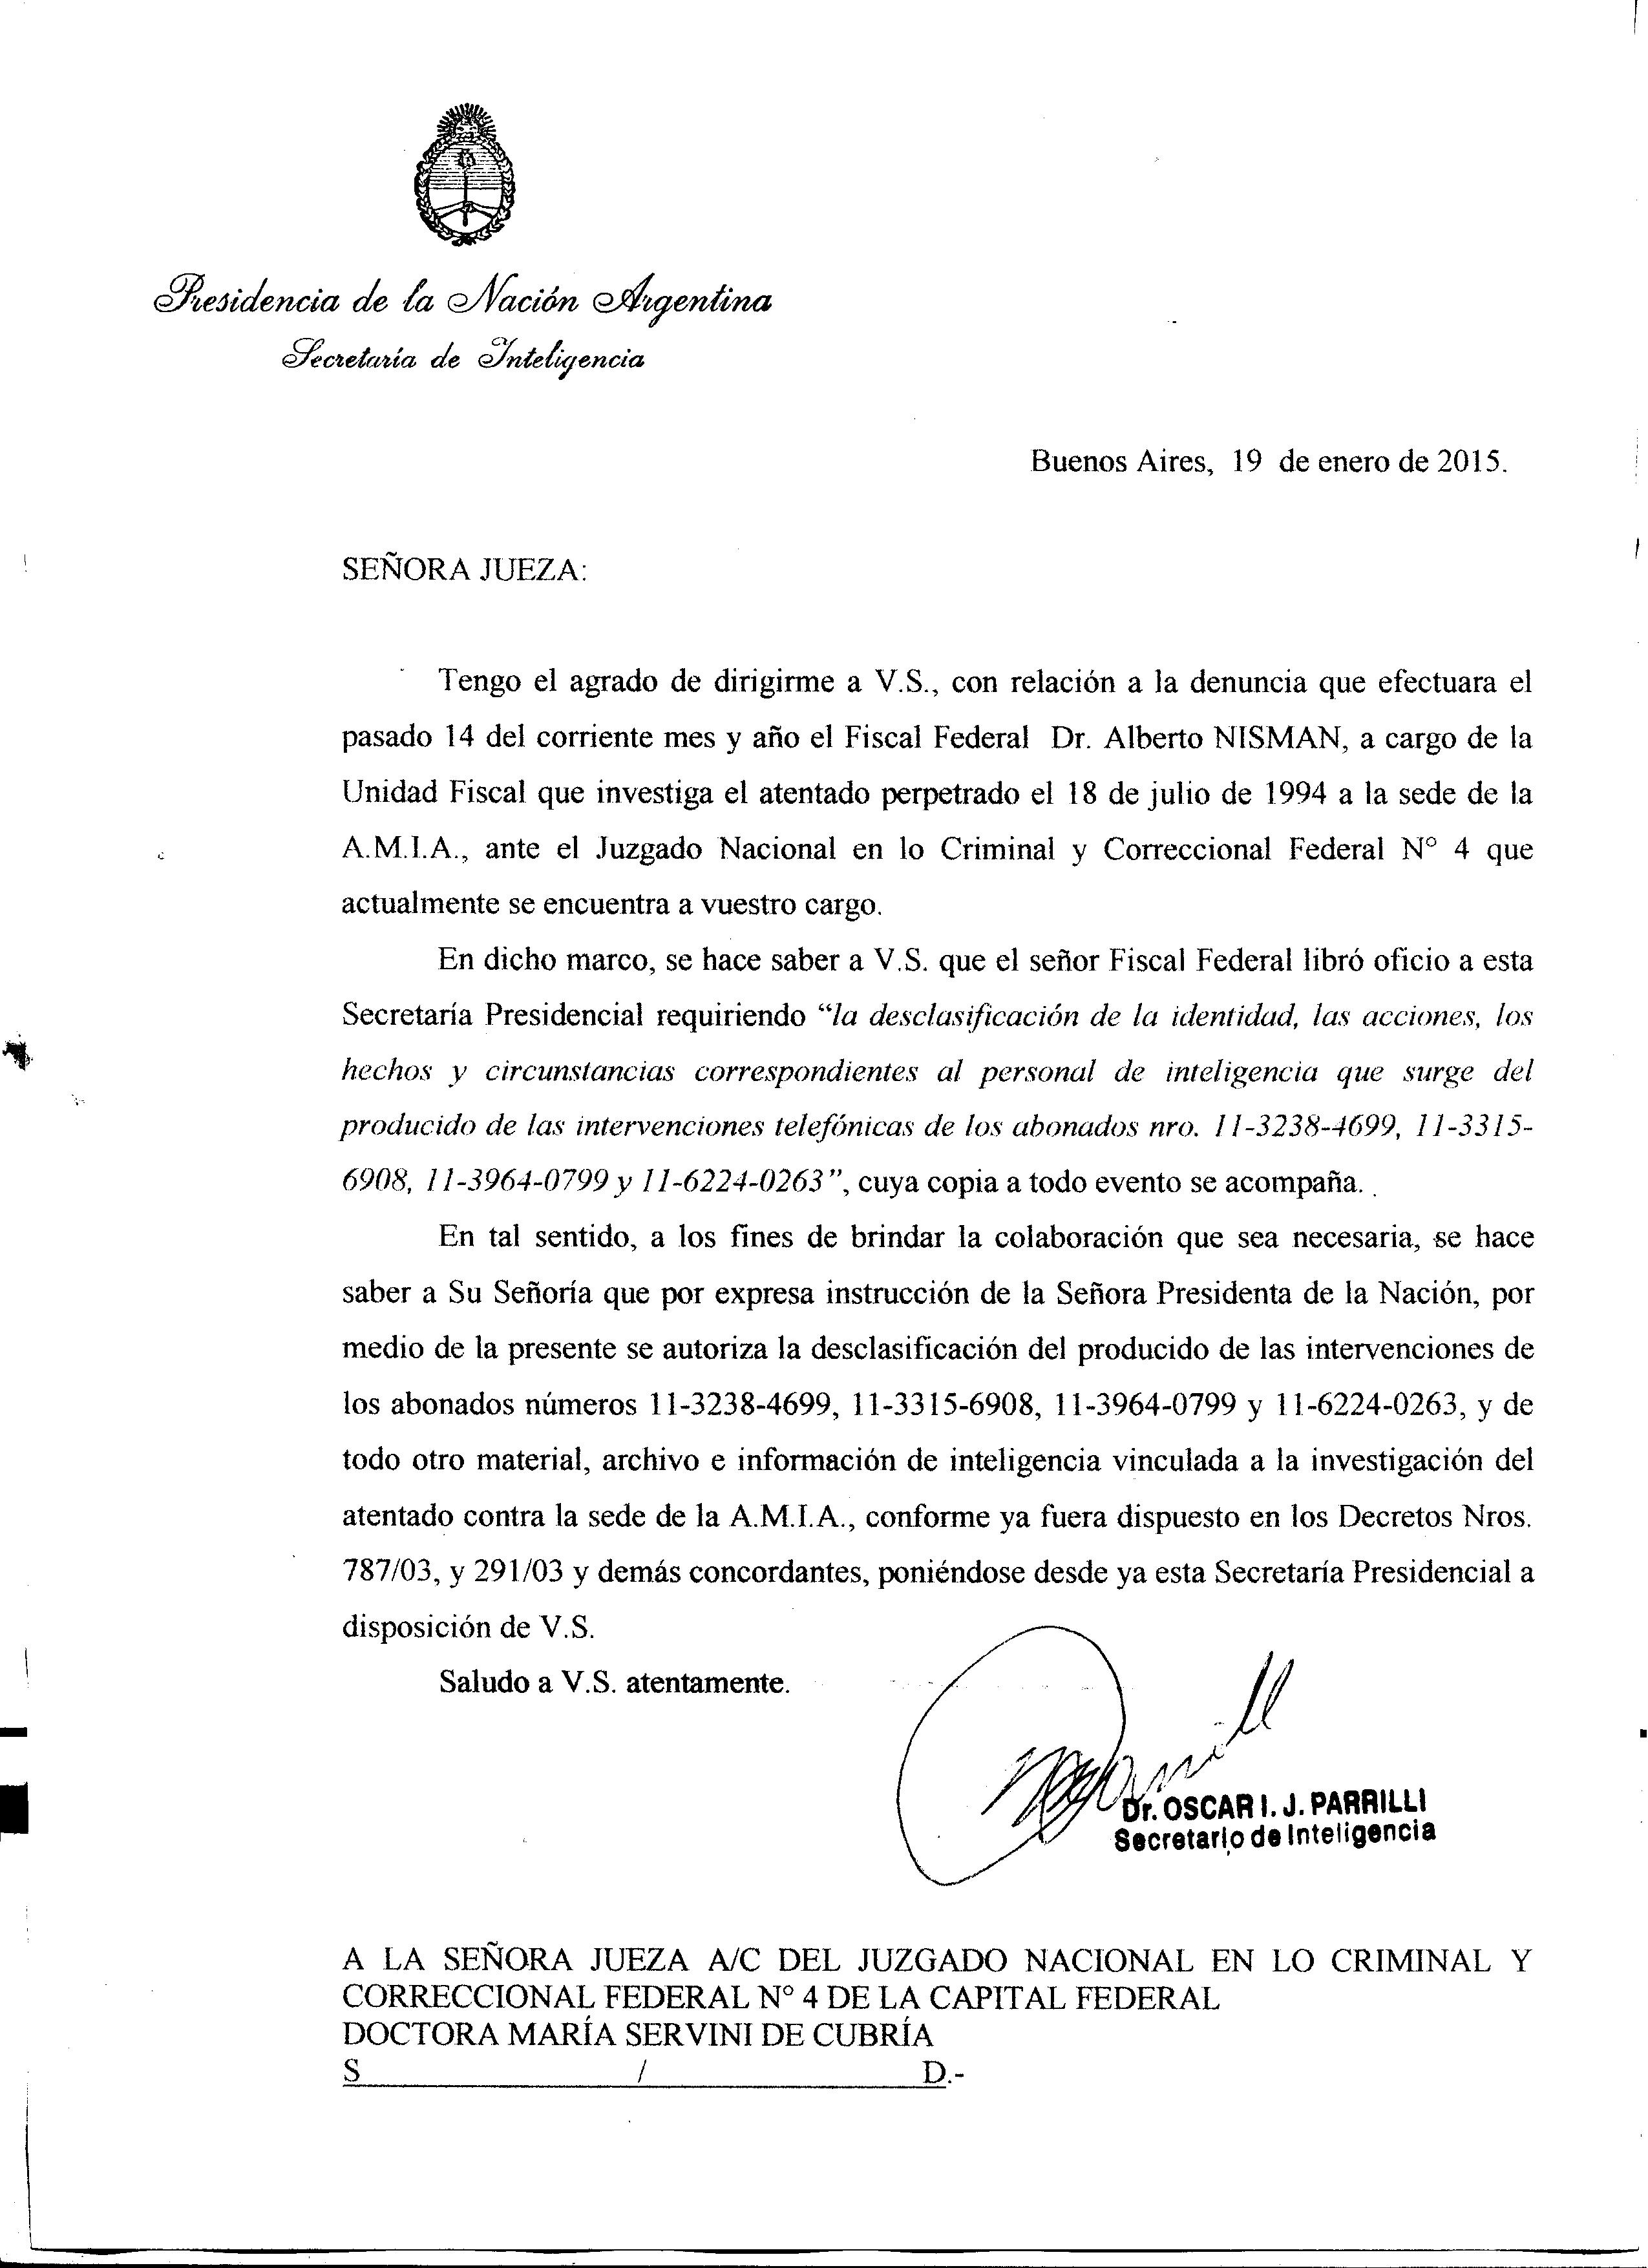 Notas enviadas por el titular de la Secretaría de Inteligencia a la jueza Servini de Cubría